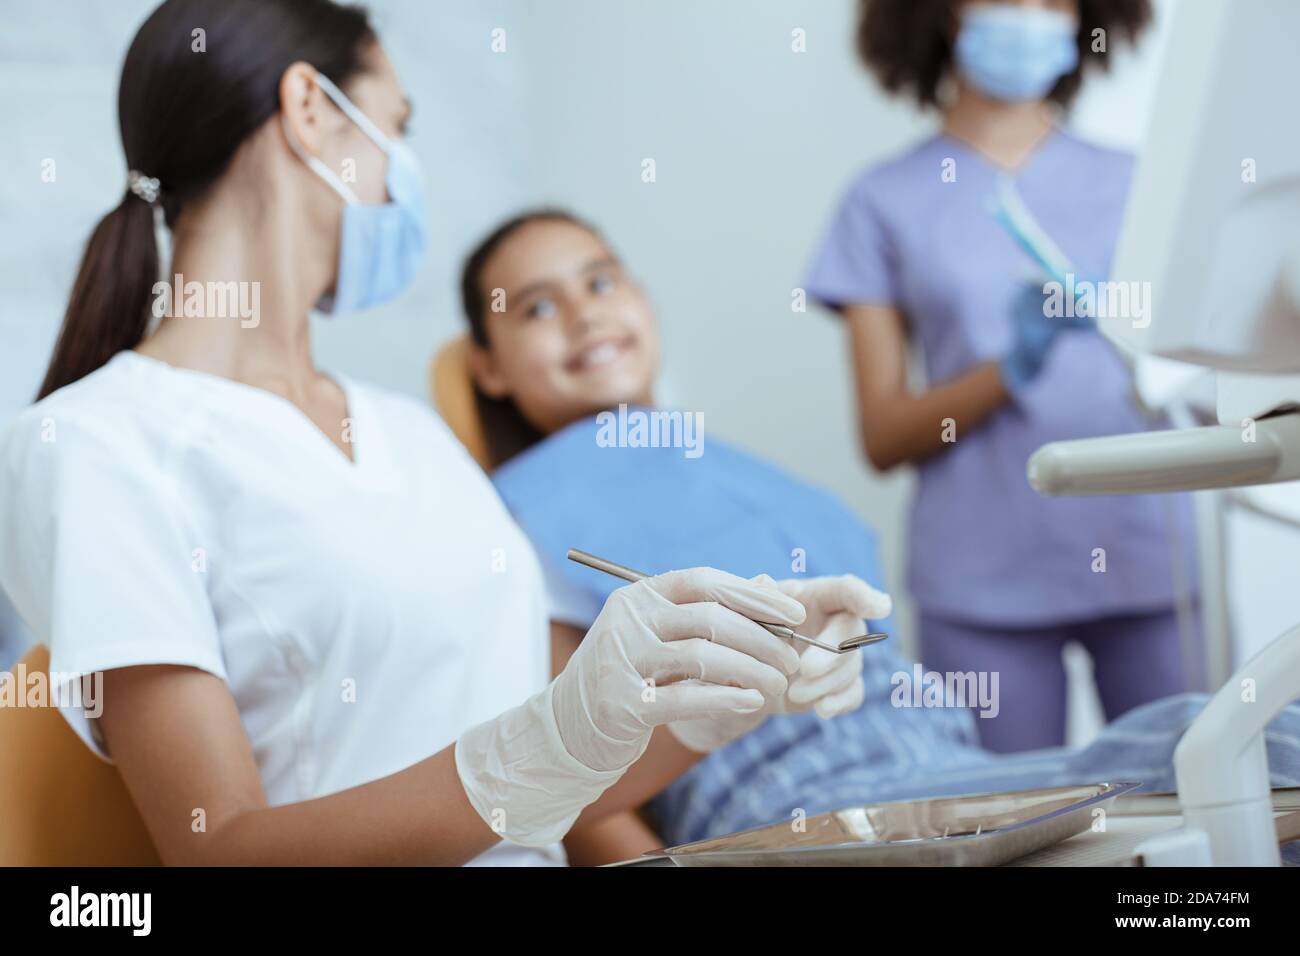 Junge Ärztin in Uniform, Gummihandschuhe und Maske mit Werkzeug behandelt Zahn des lächelnden kleinen Kindes Stockfoto